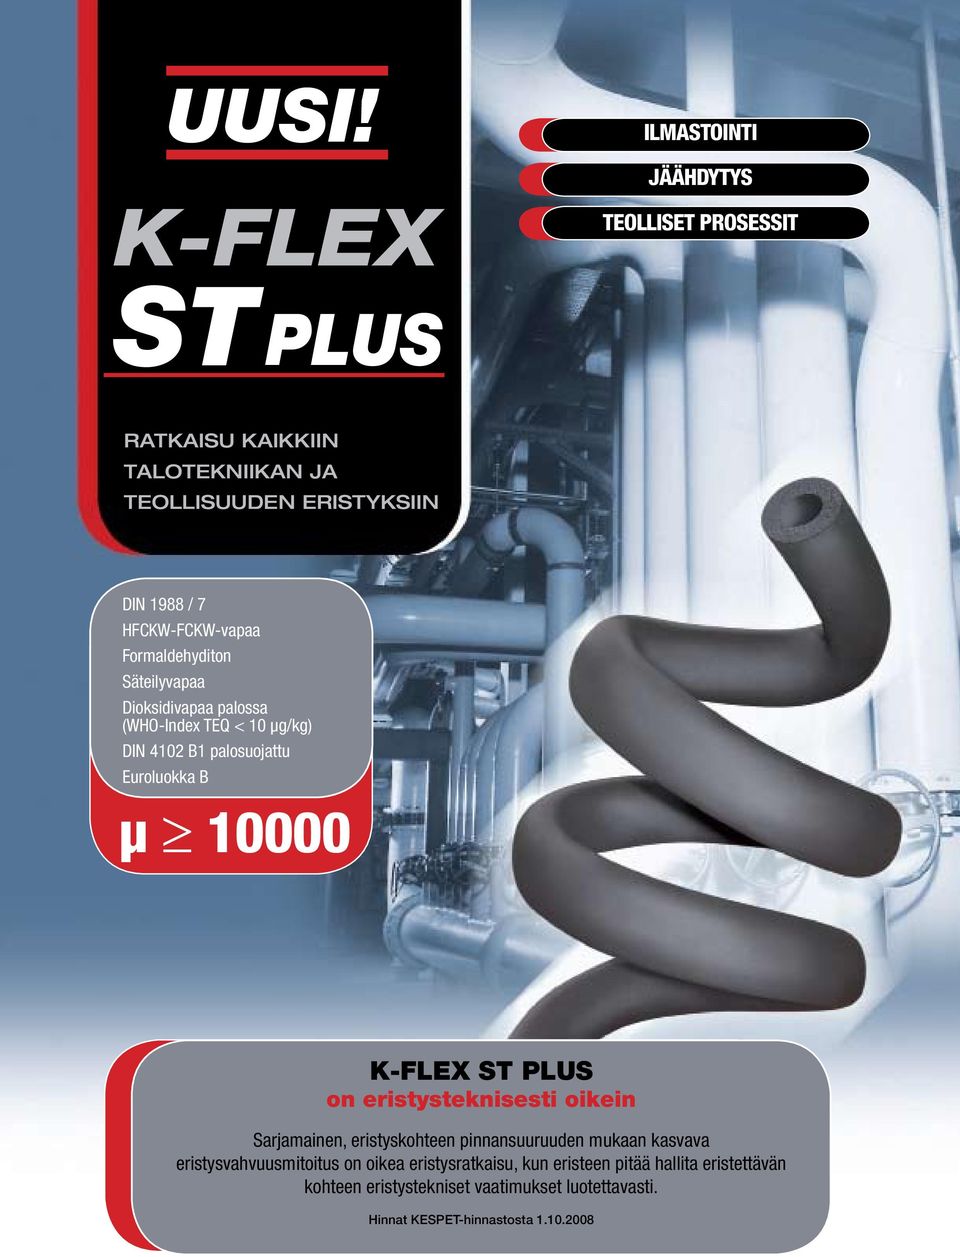 10000 K-FLEX ST PLUS on eristysteknisesti oikein Sarjamainen, eristyskohteen pinnansuuruuden mukaan kasvava eristysvahvuusmitoitus on